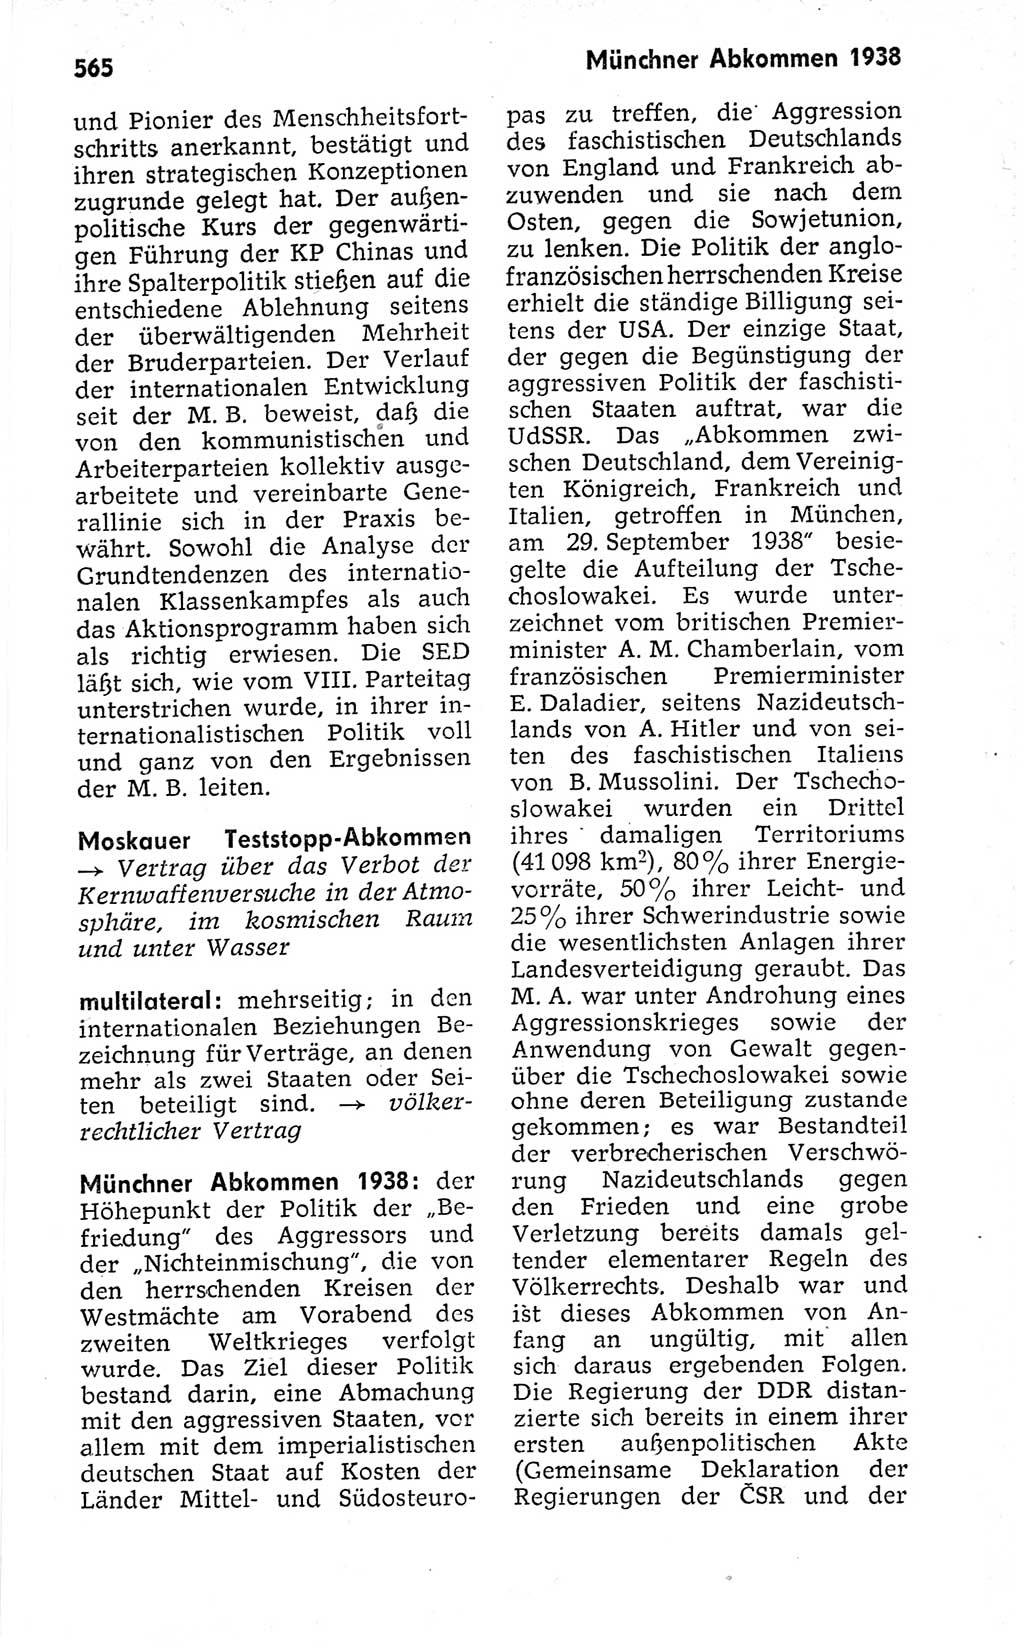 Kleines politisches Wörterbuch [Deutsche Demokratische Republik (DDR)] 1973, Seite 565 (Kl. pol. Wb. DDR 1973, S. 565)